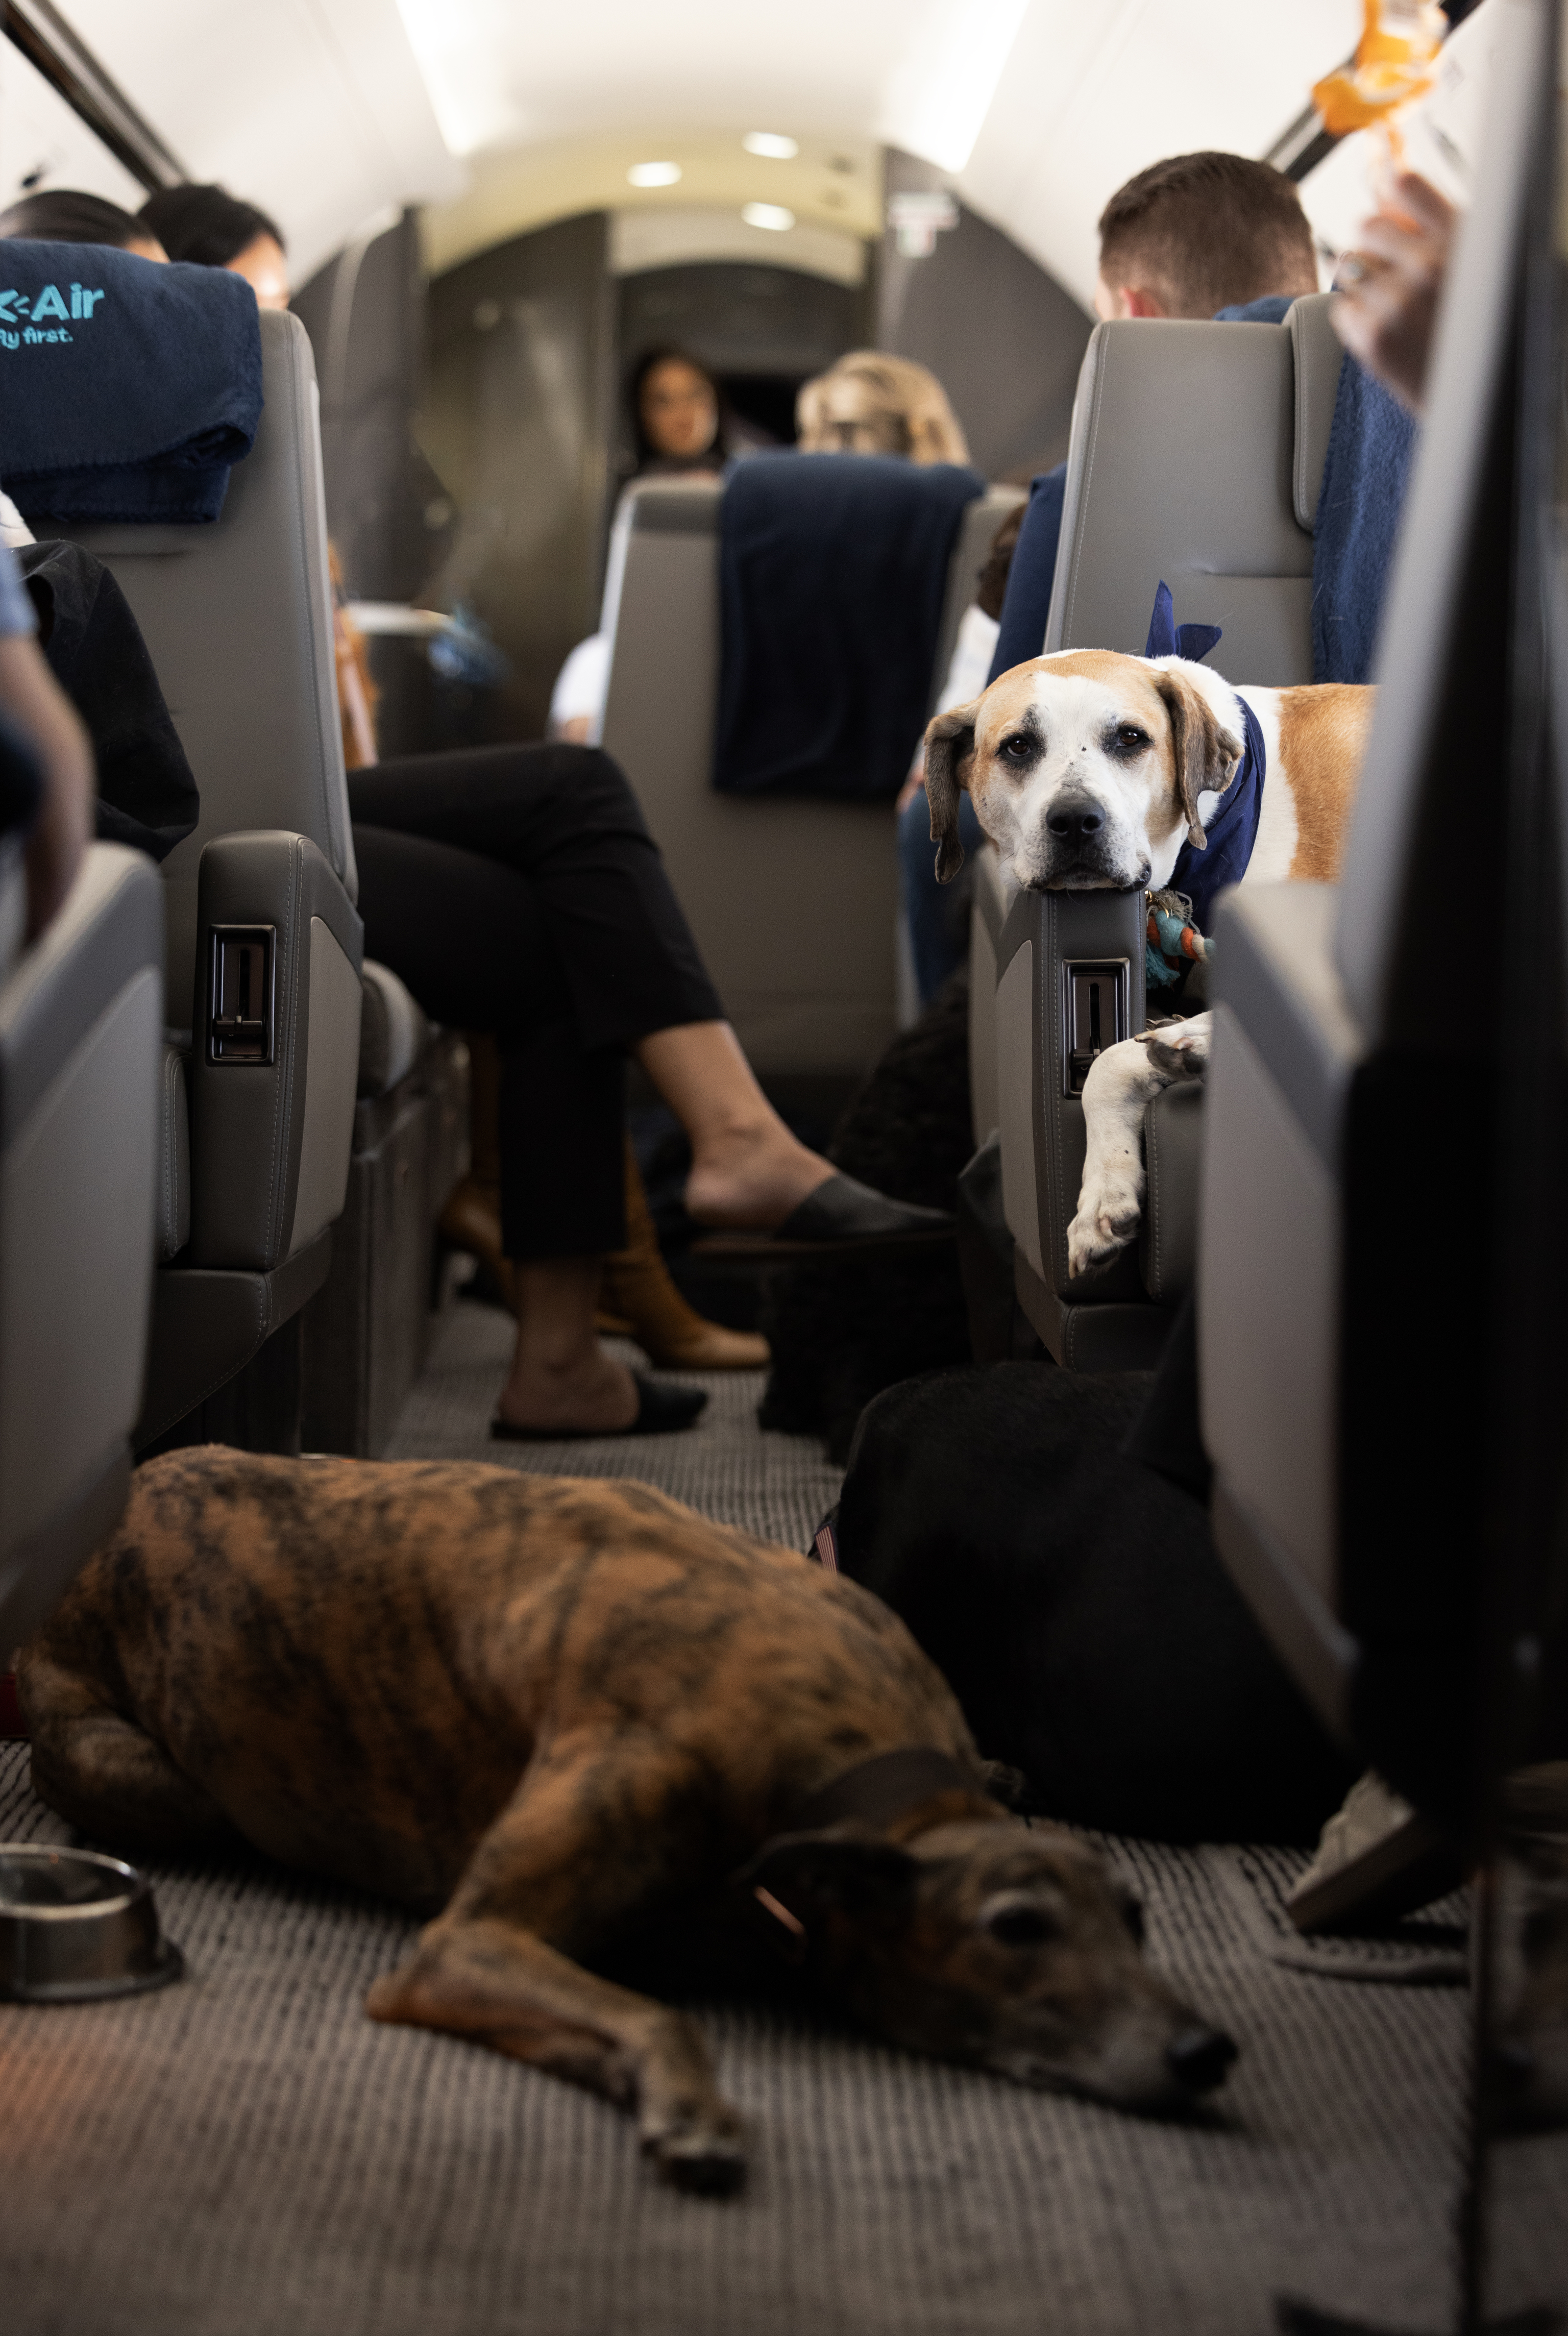 "No existe un servicio que ponga en el centro de la experiencia de volar al perro", dice la compañía.